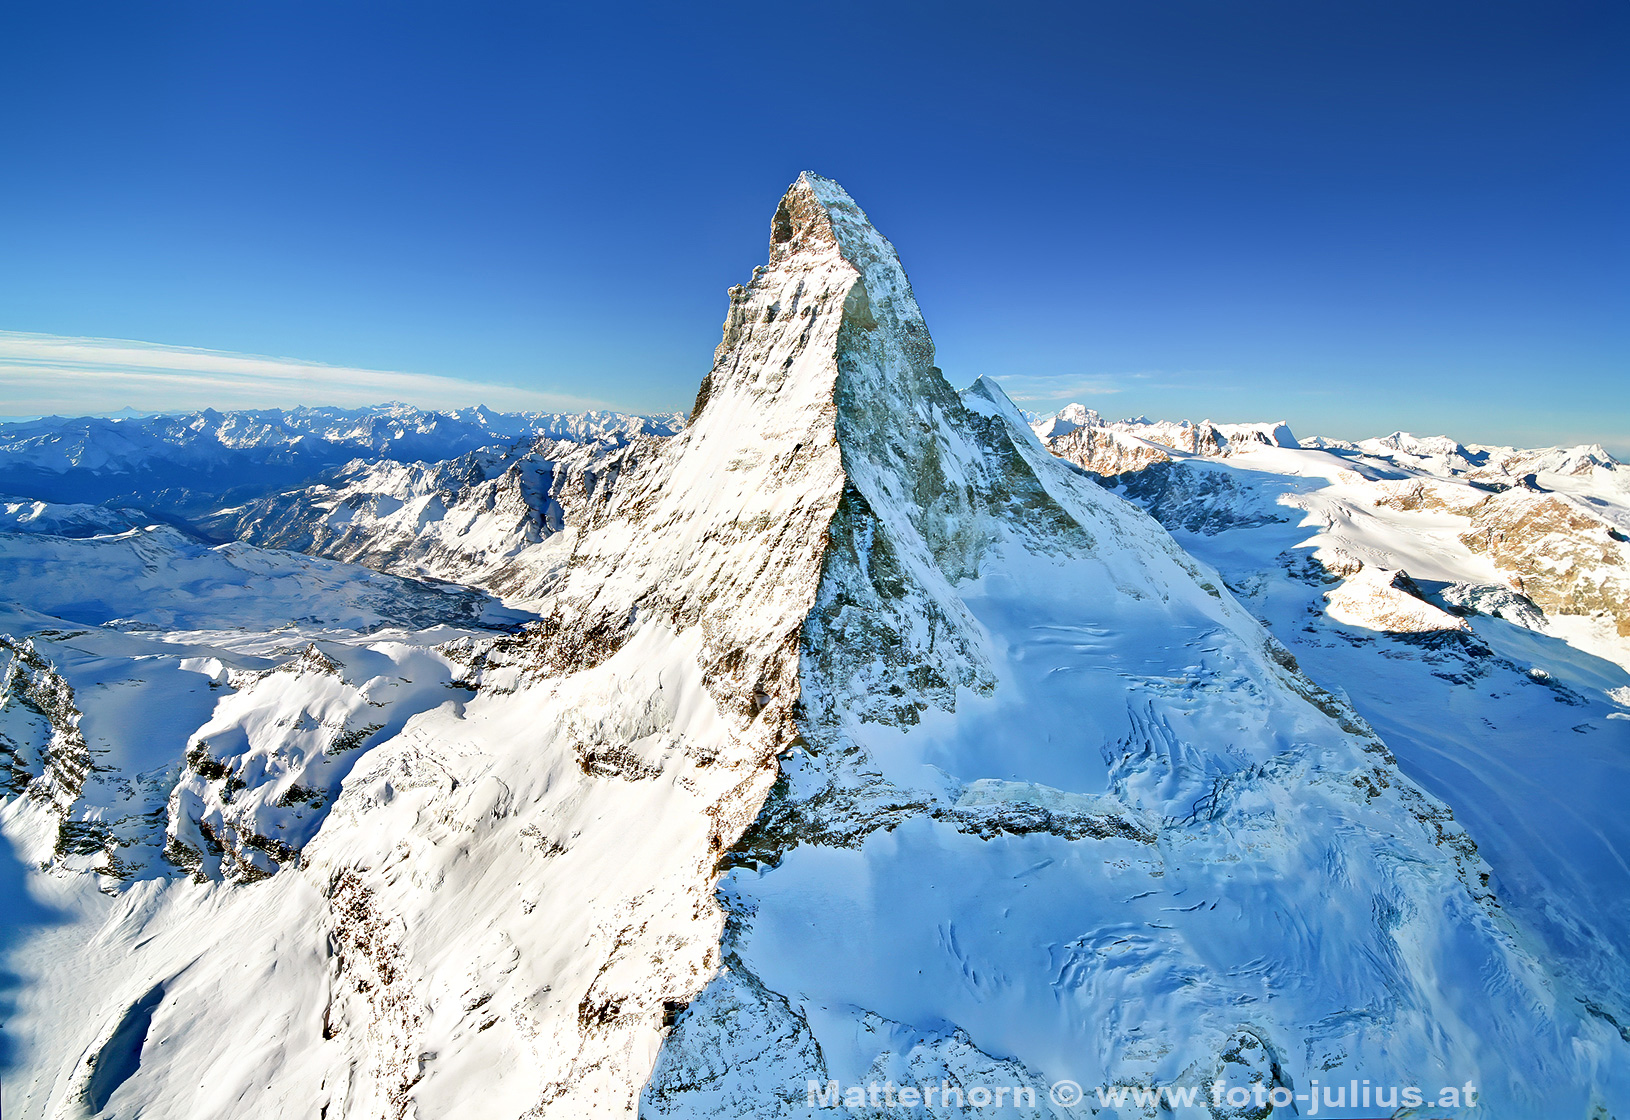 0602a_Matterhorn.jpg, 892kB